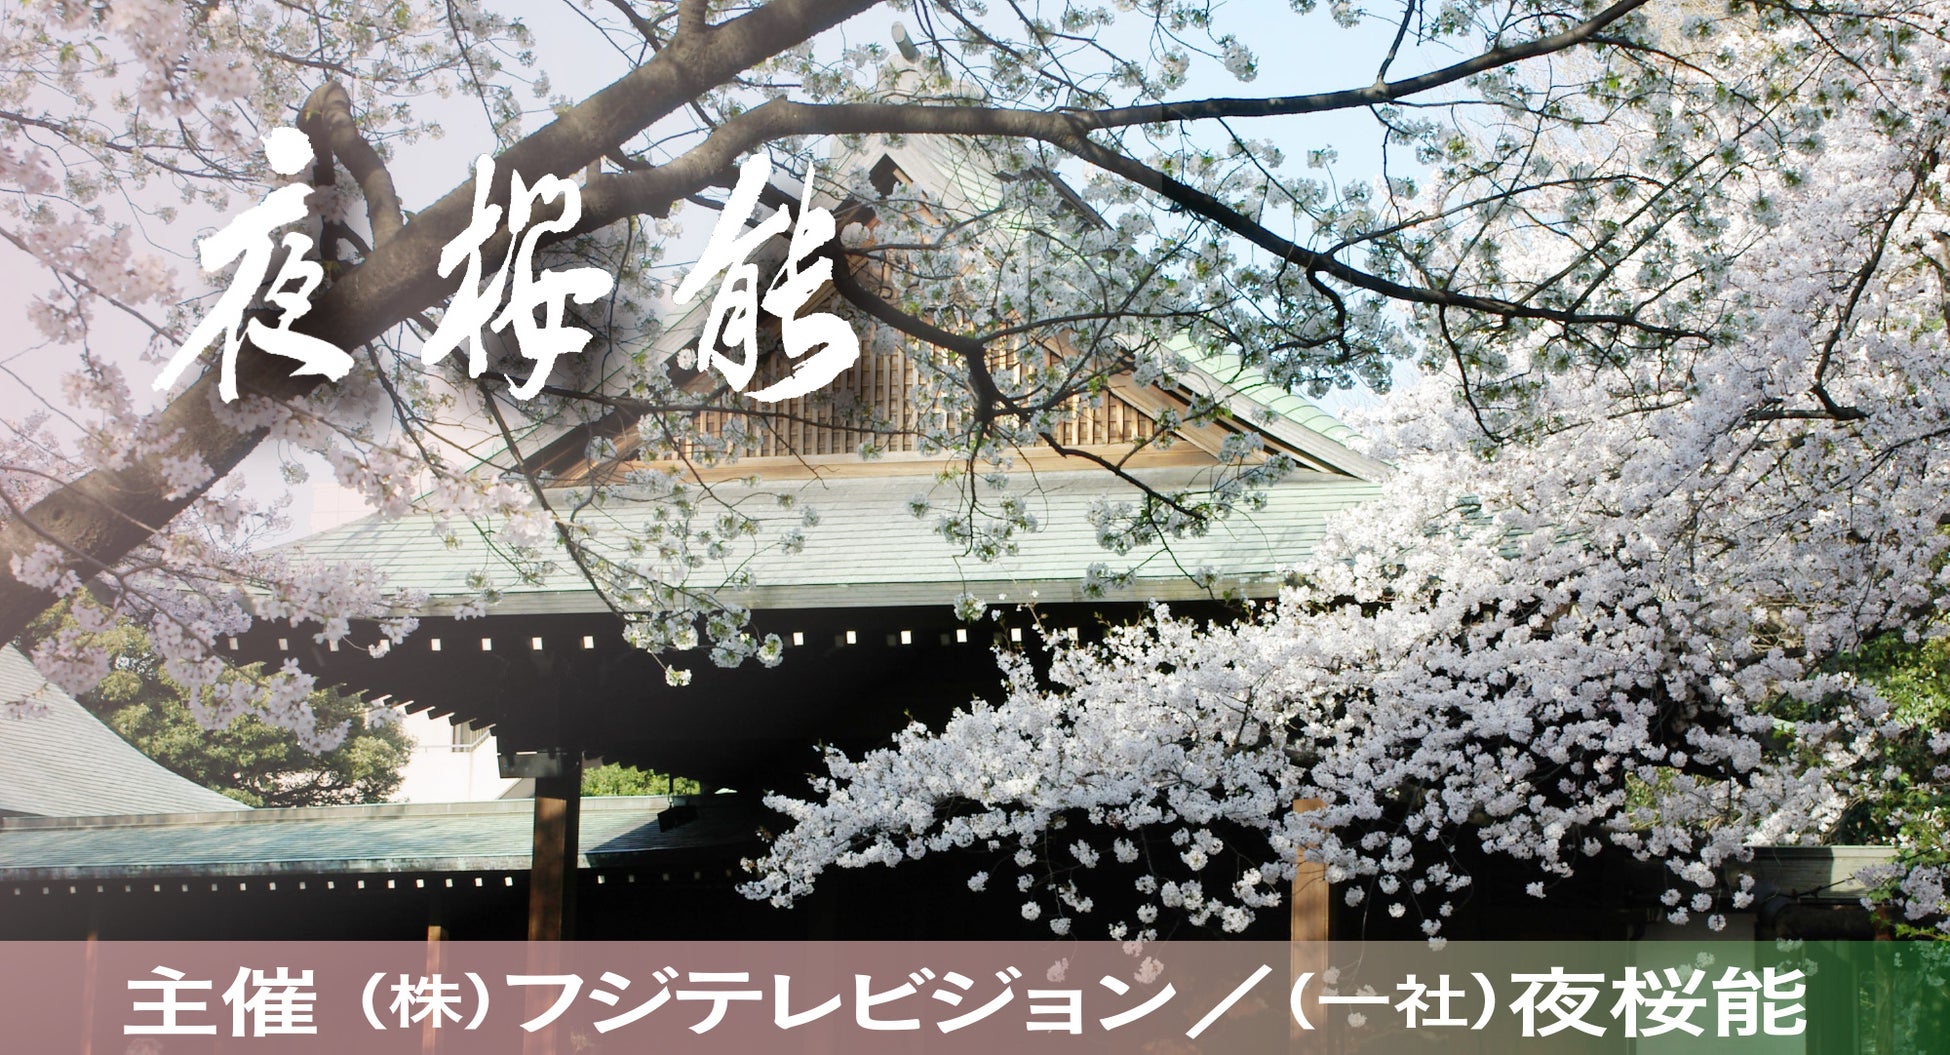 沖縄を代表するアーティストHYが全国へ香りをお届け！花と笑顔のライブツアー「HANAEMI TOUR 2022-2023」の会場で、メンバーによってブレンドされた香りの空間演を出実施します。